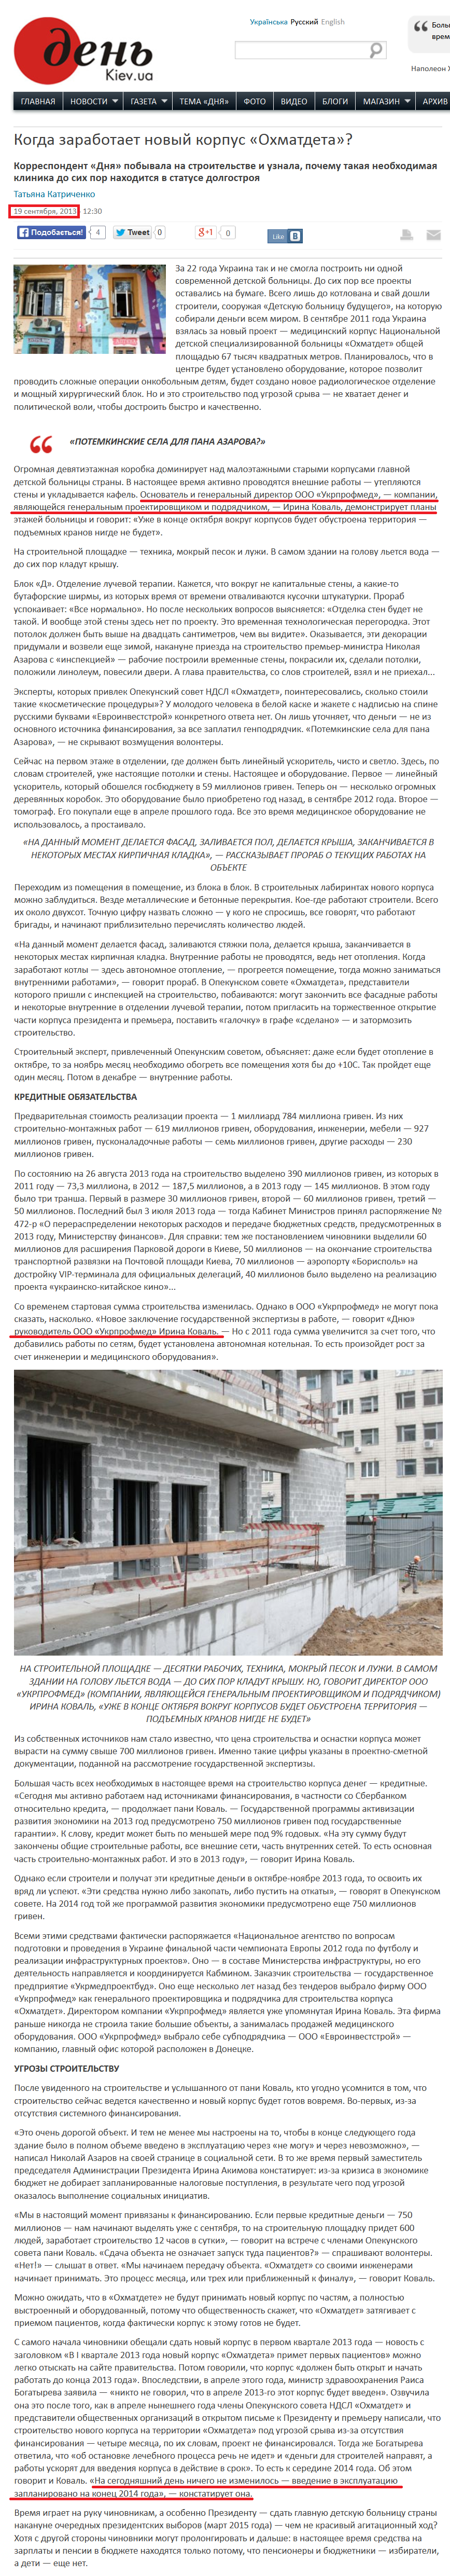 http://www.day.kiev.ua/ru/article/obshchestvo/kogda-zarabotaet-novyy-korpus-ohmatdeta